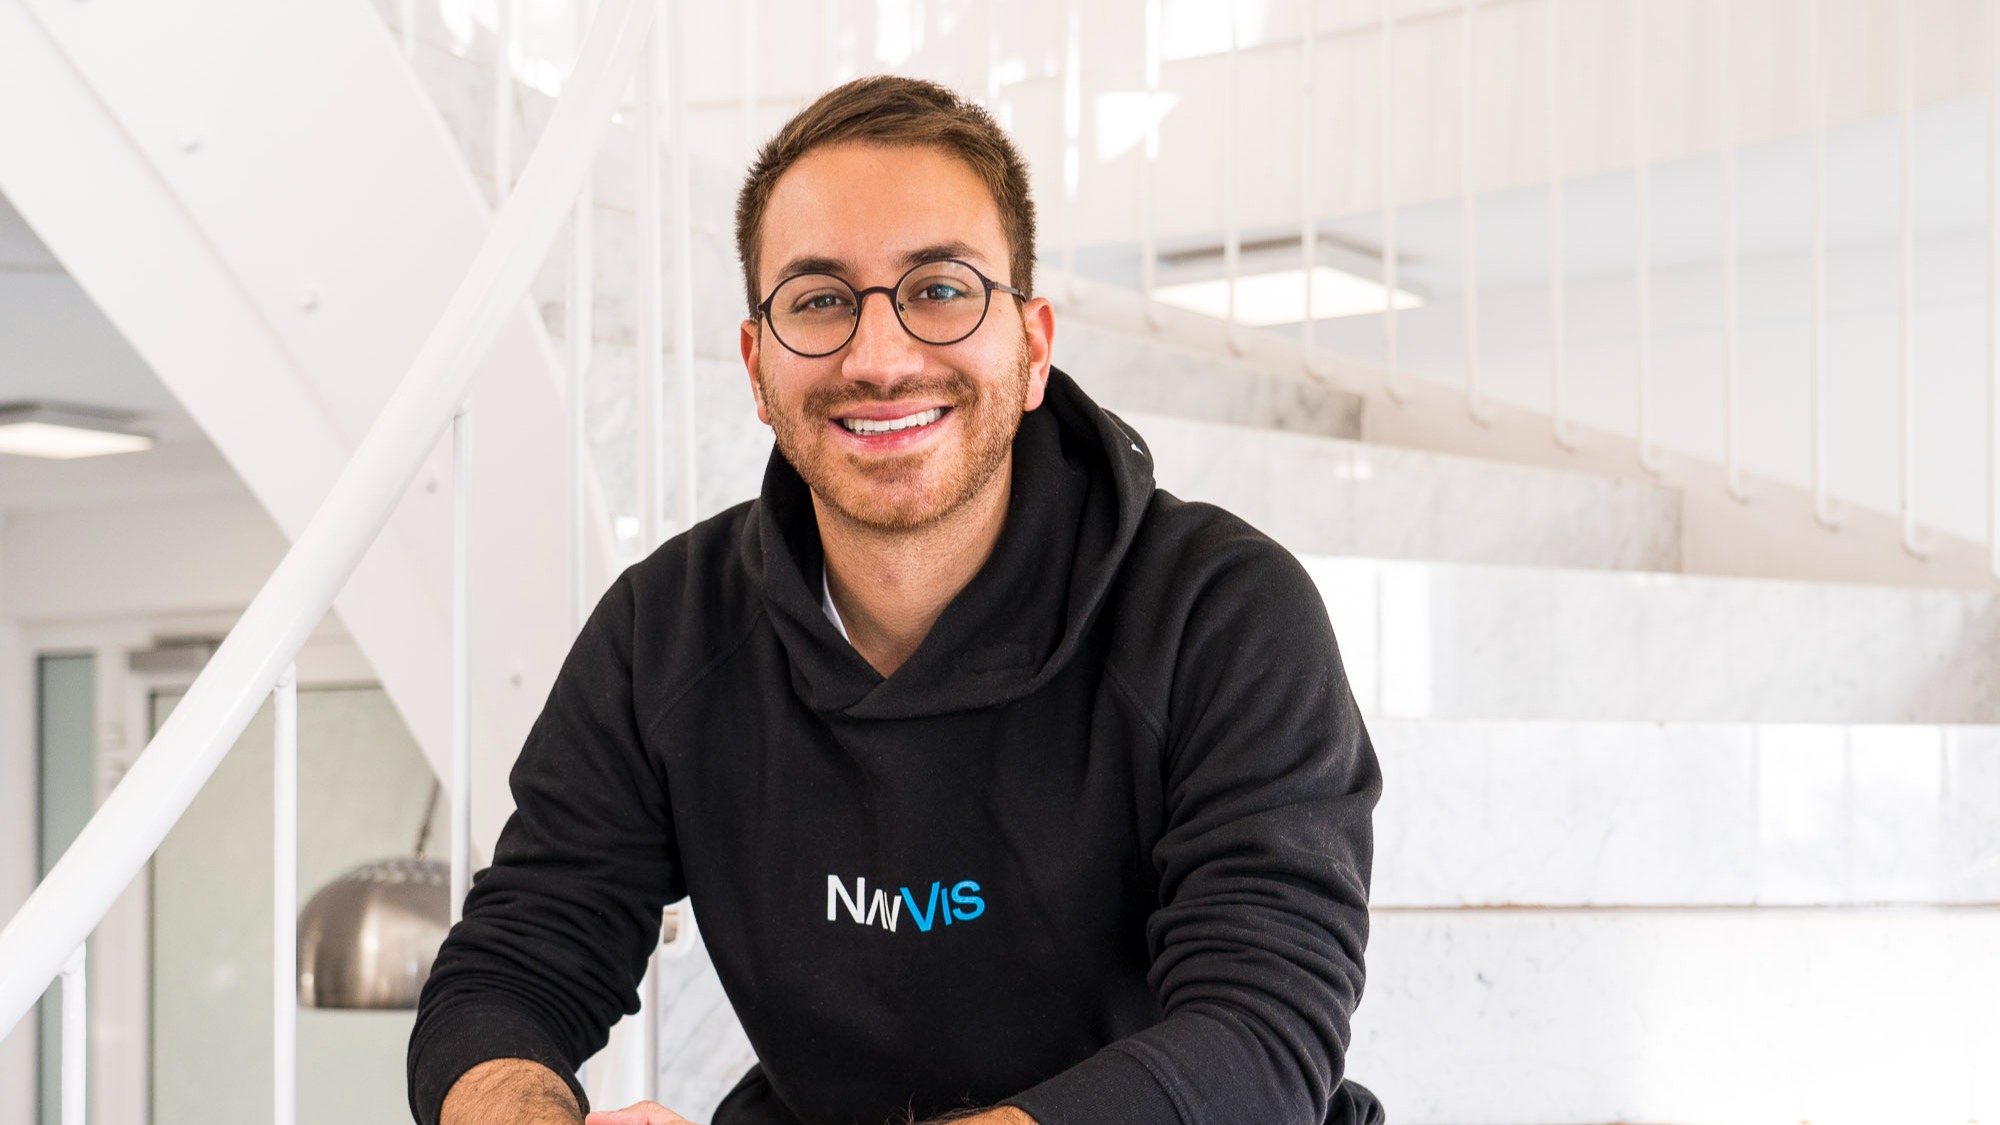 Wir sind NavVis: Pablo Arias, Advanced Software Engineer